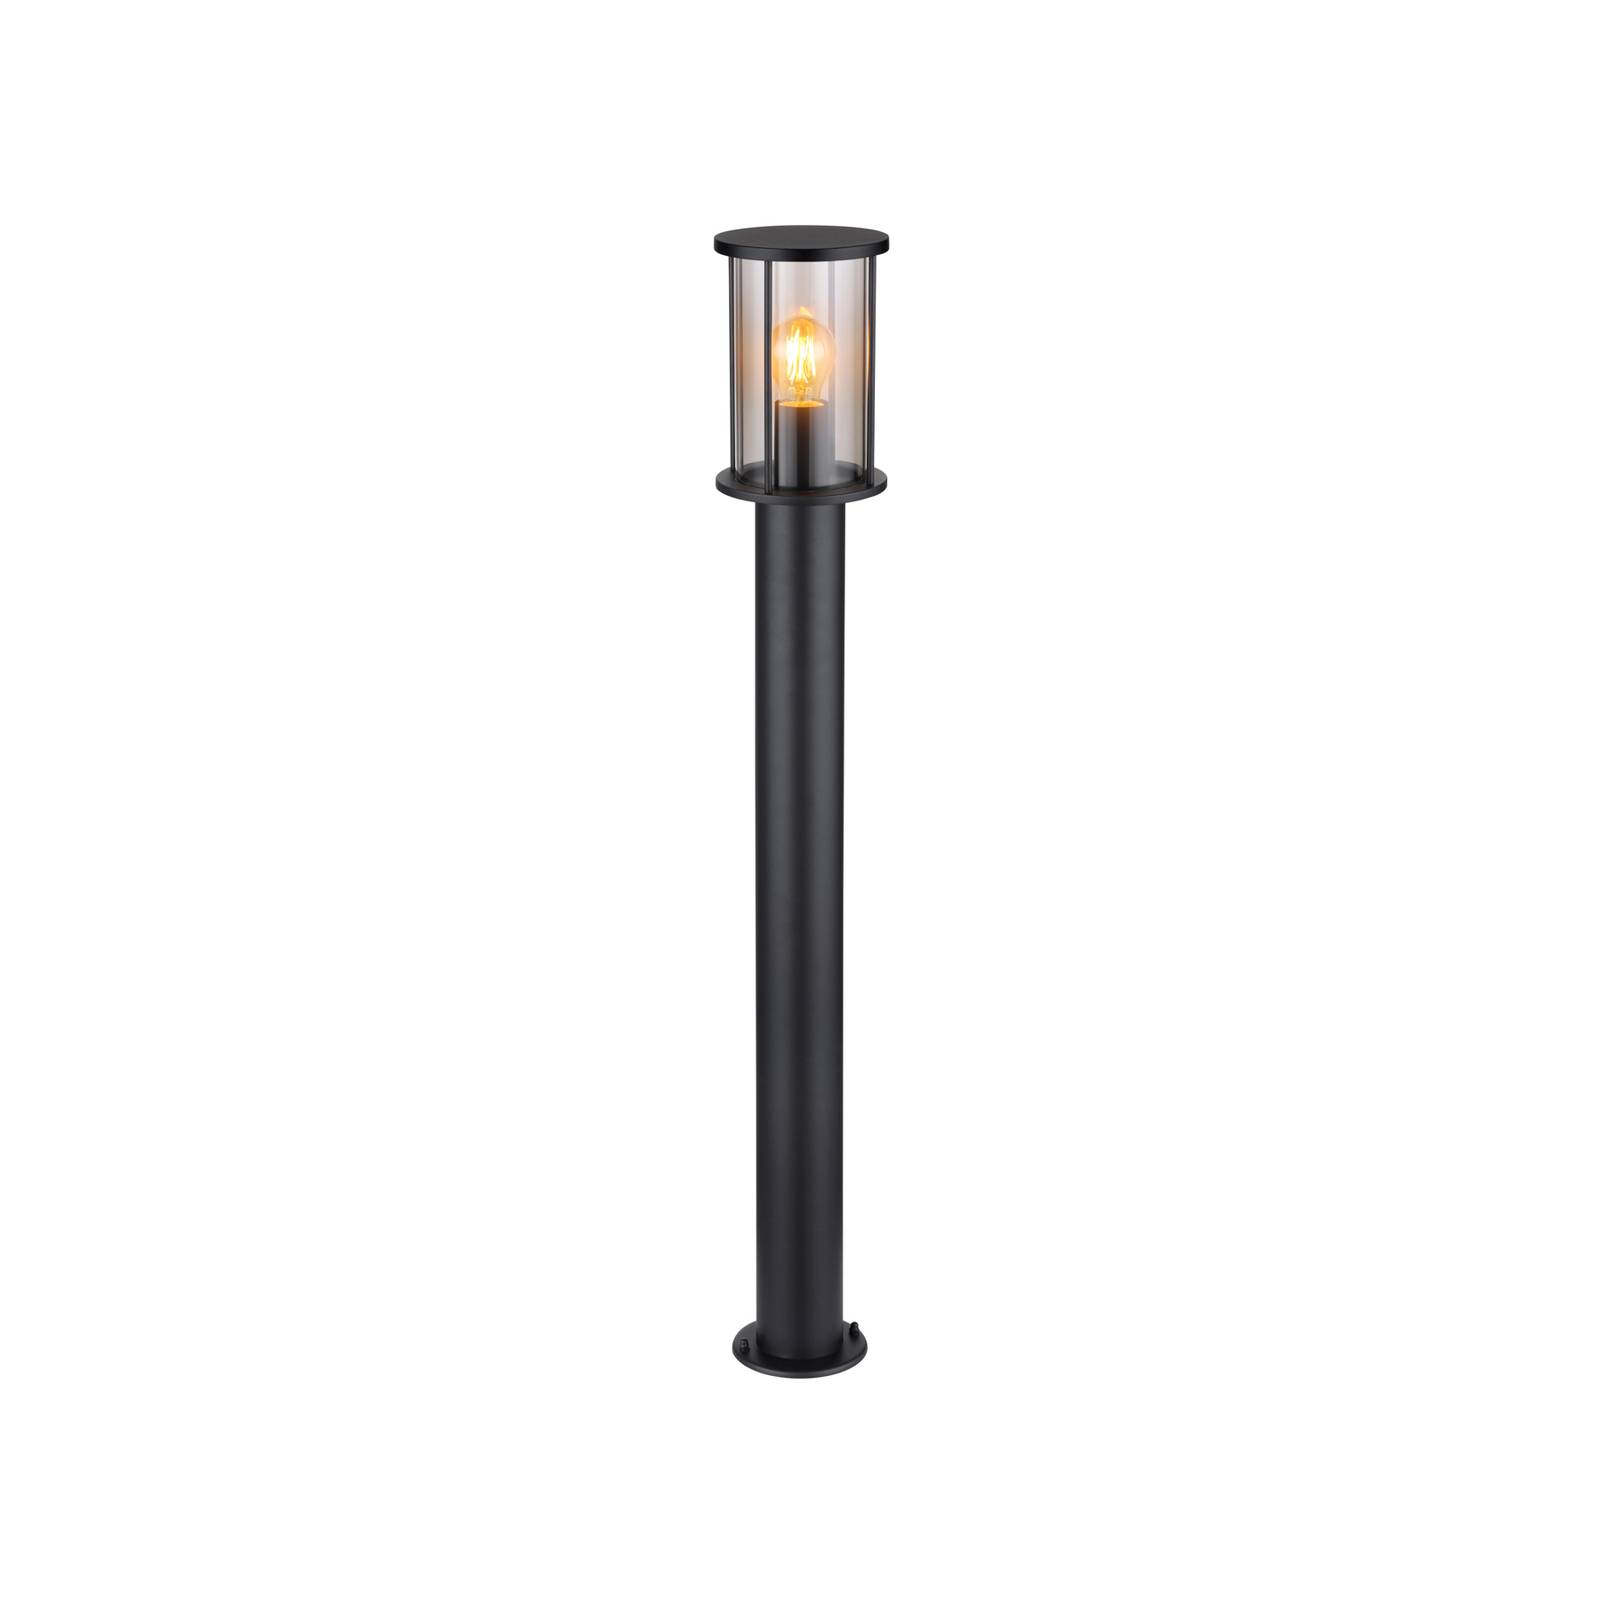 E-shop Cestné svetlo Gracey, výška 100 cm, čierna farba, nerezová oceľ, IP54